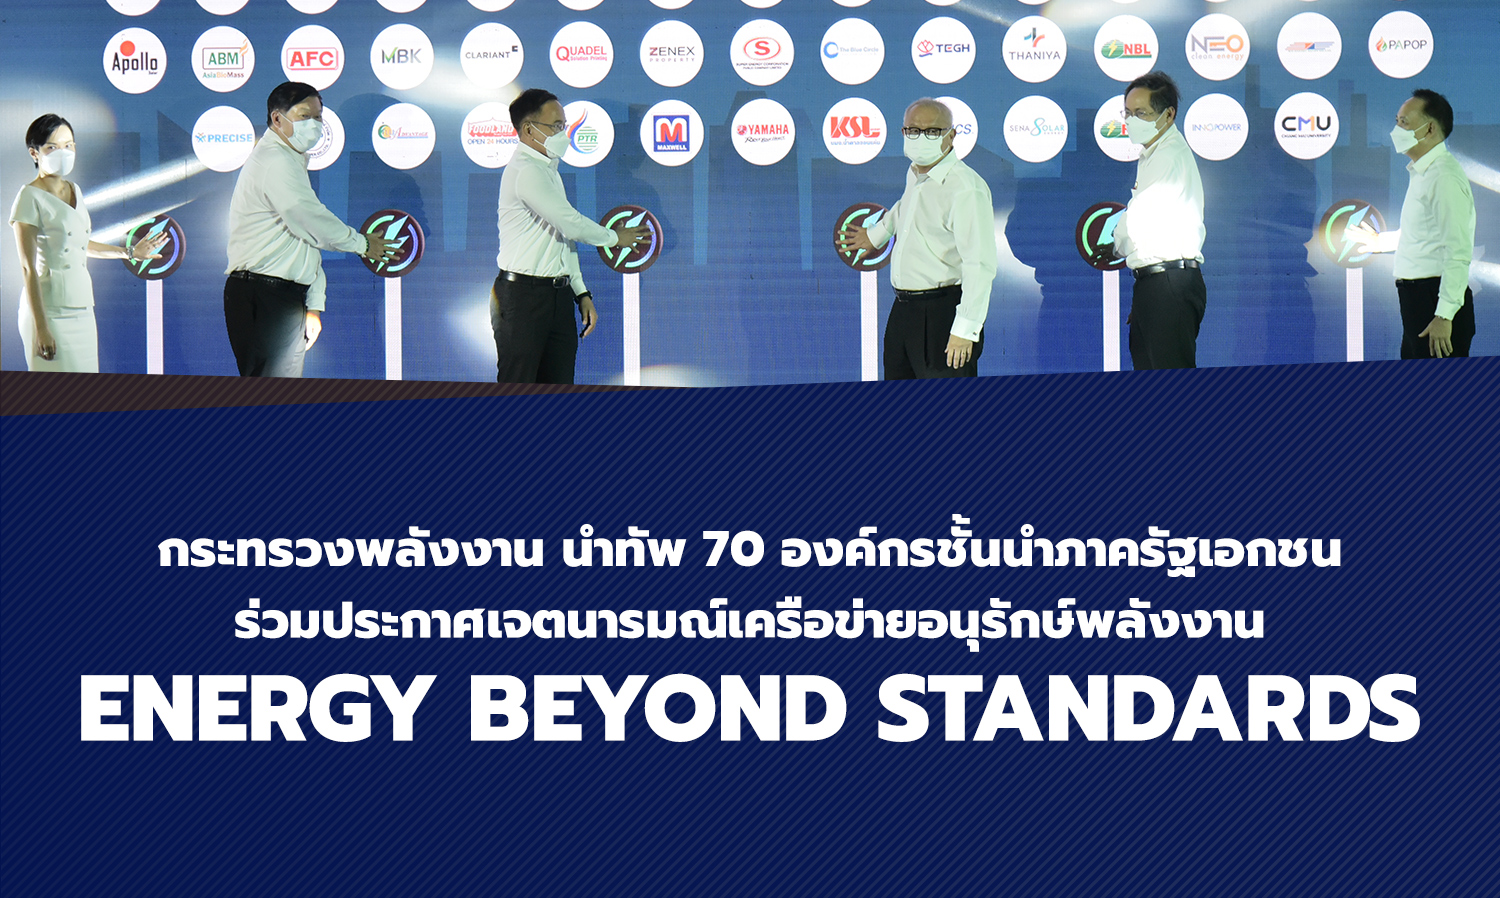 กระทรวงพลังงาน นำทัพ 70 องค์กรชั้นนำภาครัฐเอกชน ร่วมประกาศเจตนารมณ์เครือข่ายอนุรักษ์พลังงาน Energy Beyond Standards